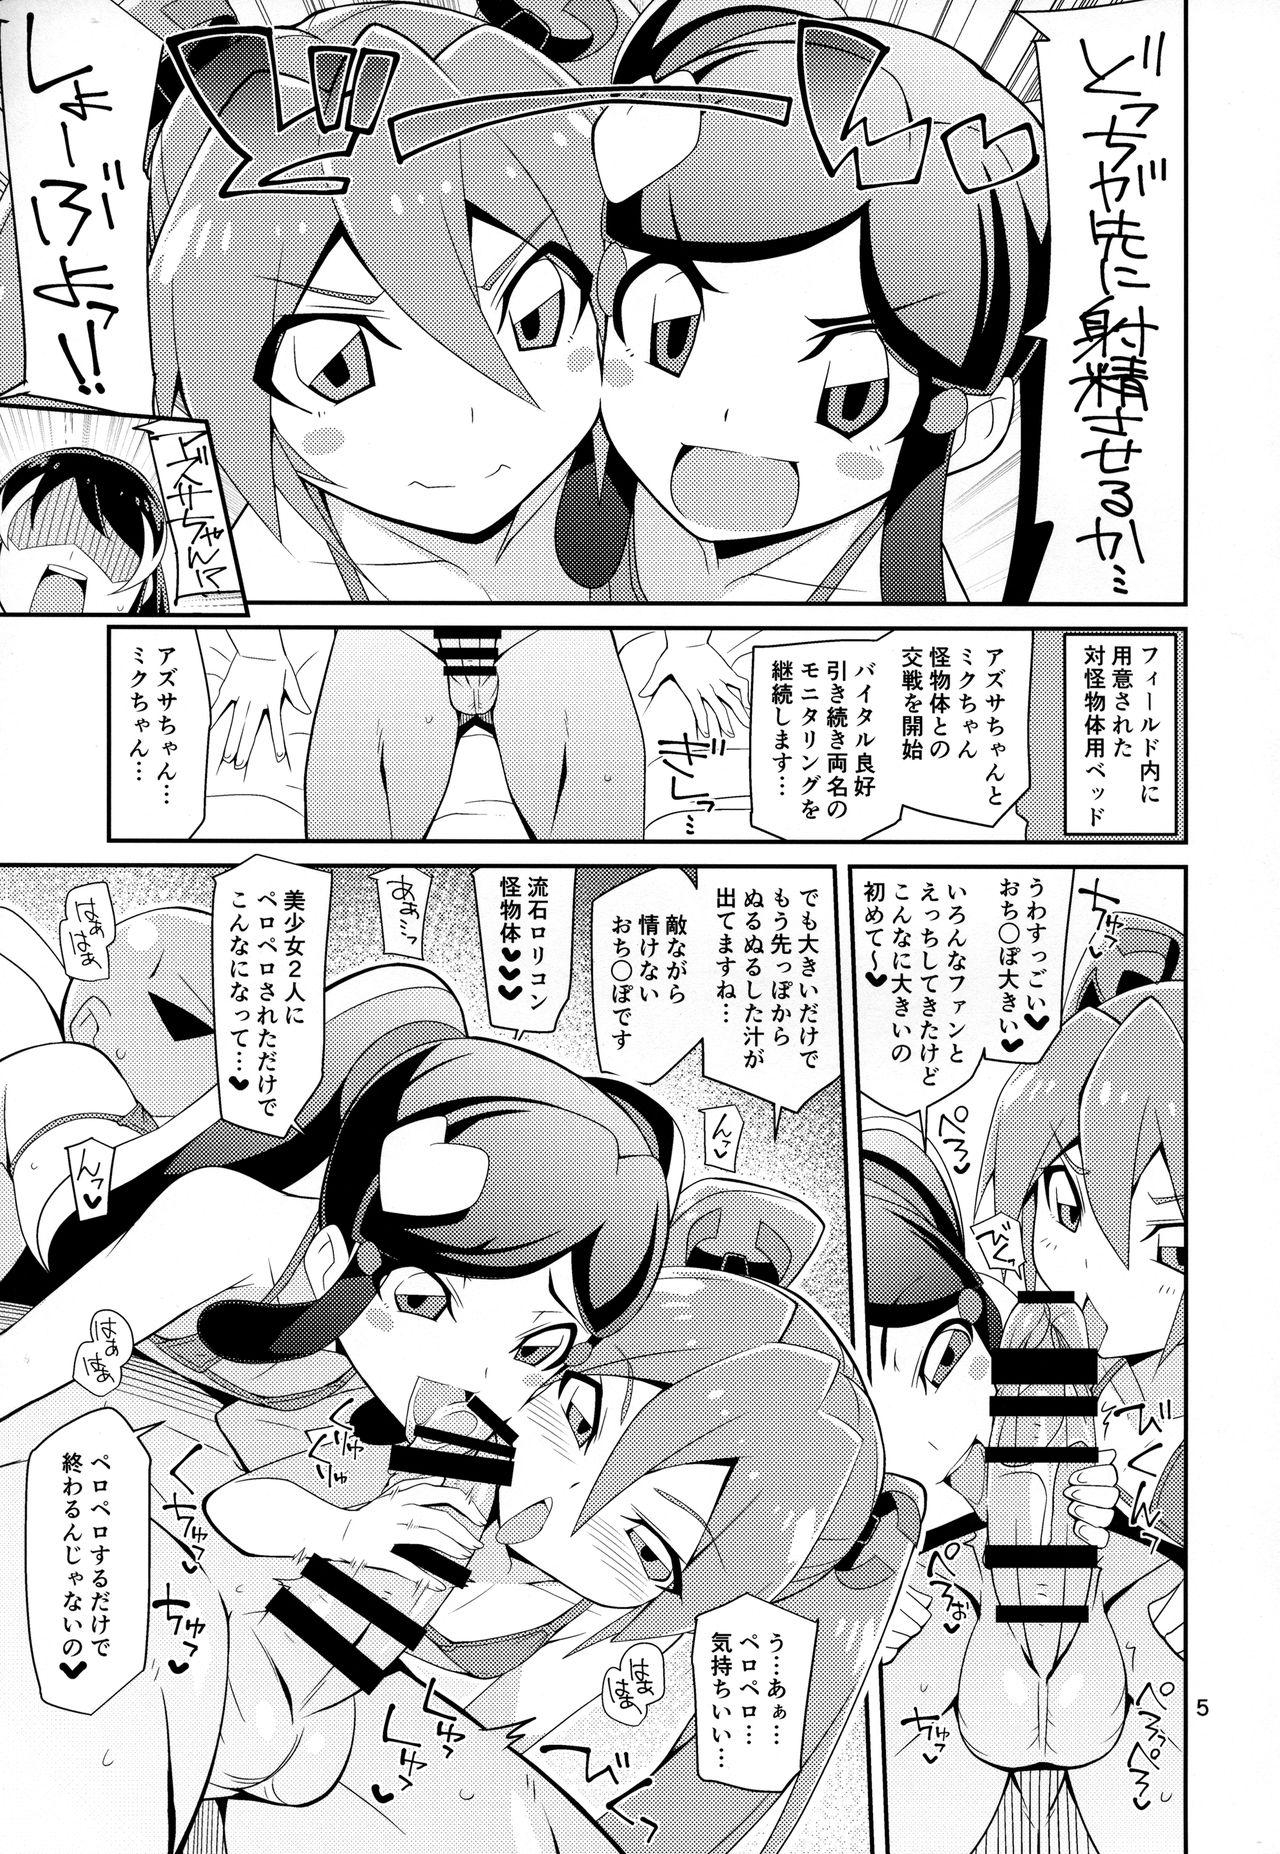 Moms Azu x Miku ga Shite Ageru - Shinkansen henkei robo shinkalion Esposa - Page 4